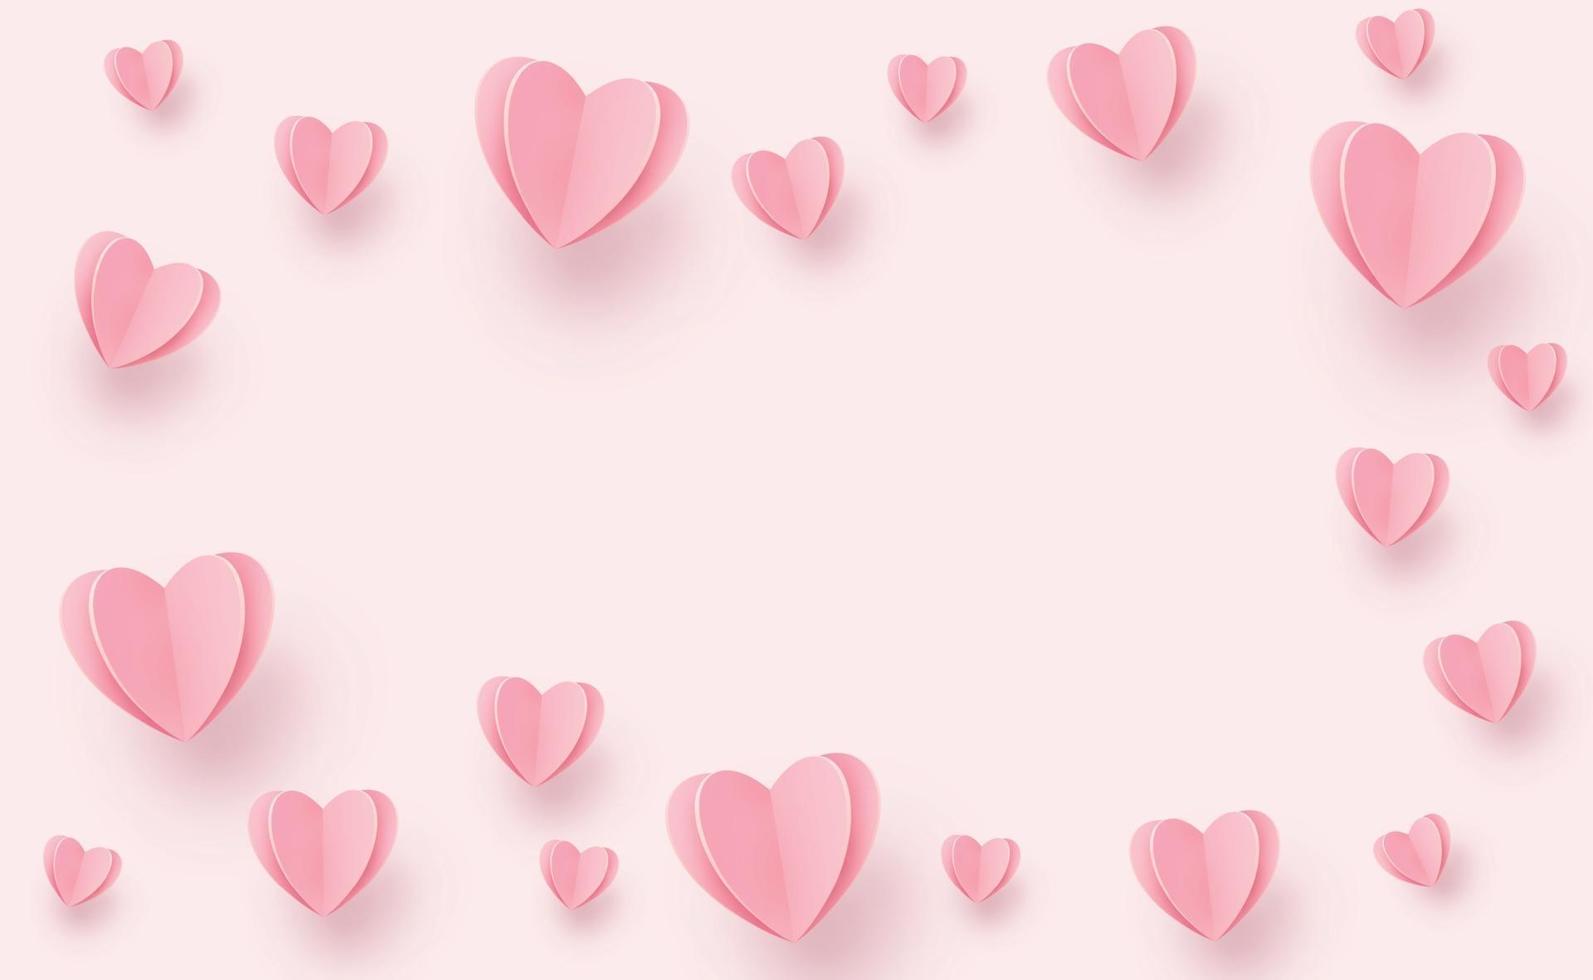 delicados corações rosa-avermelhados em um fundo rosa - ilustração vetor